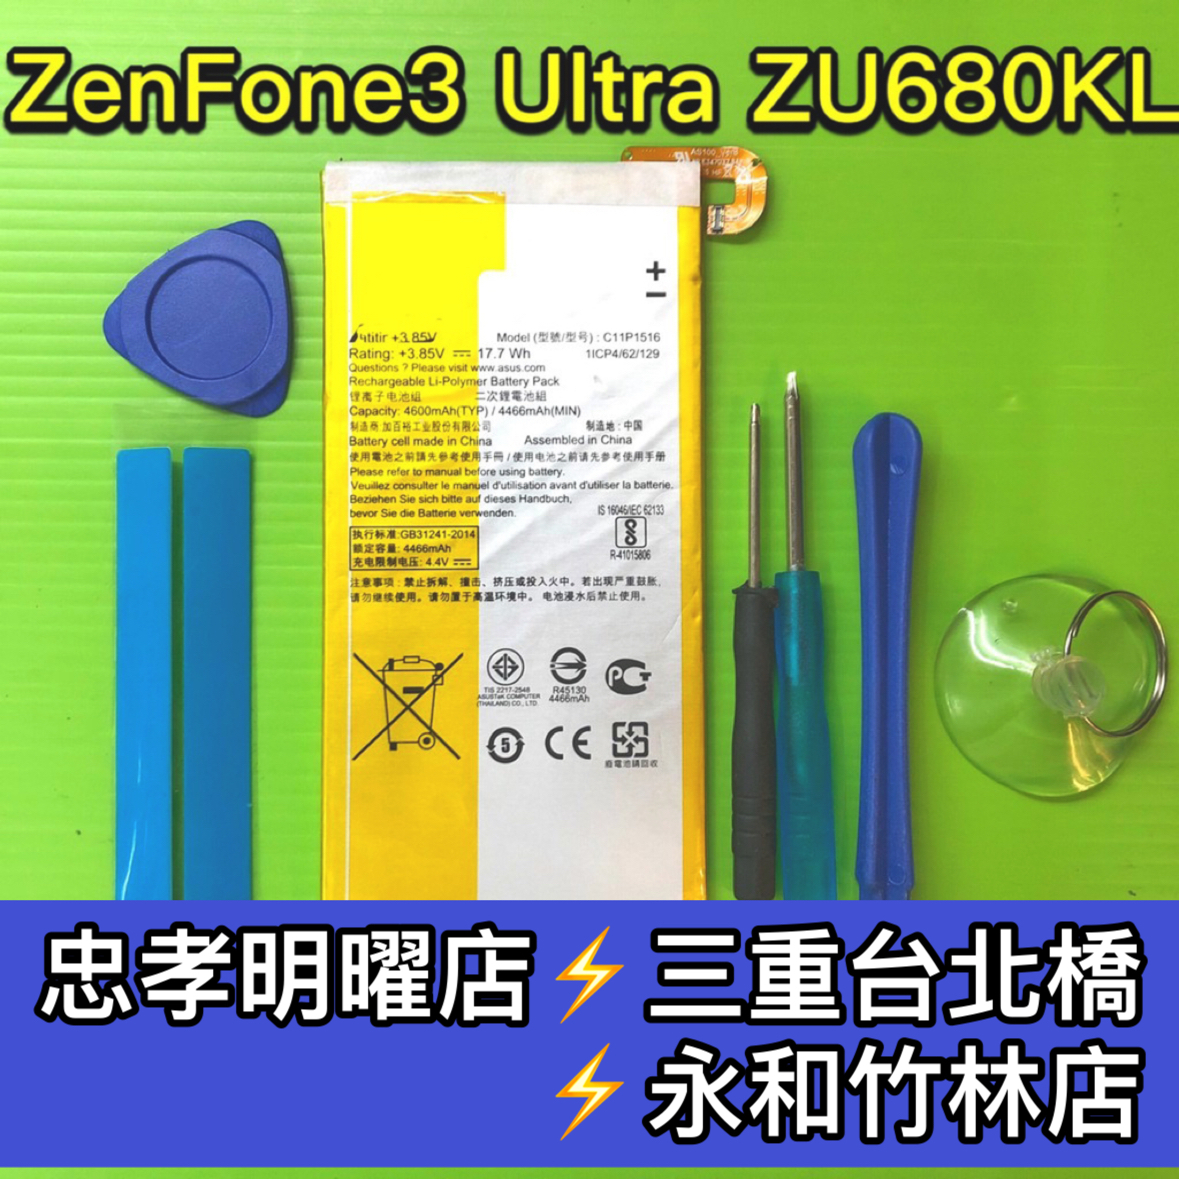 ASUS華碩 Zenfone3 Ultra ZU680KL 電池 C11P1516 電池維修 電池更換 換電池